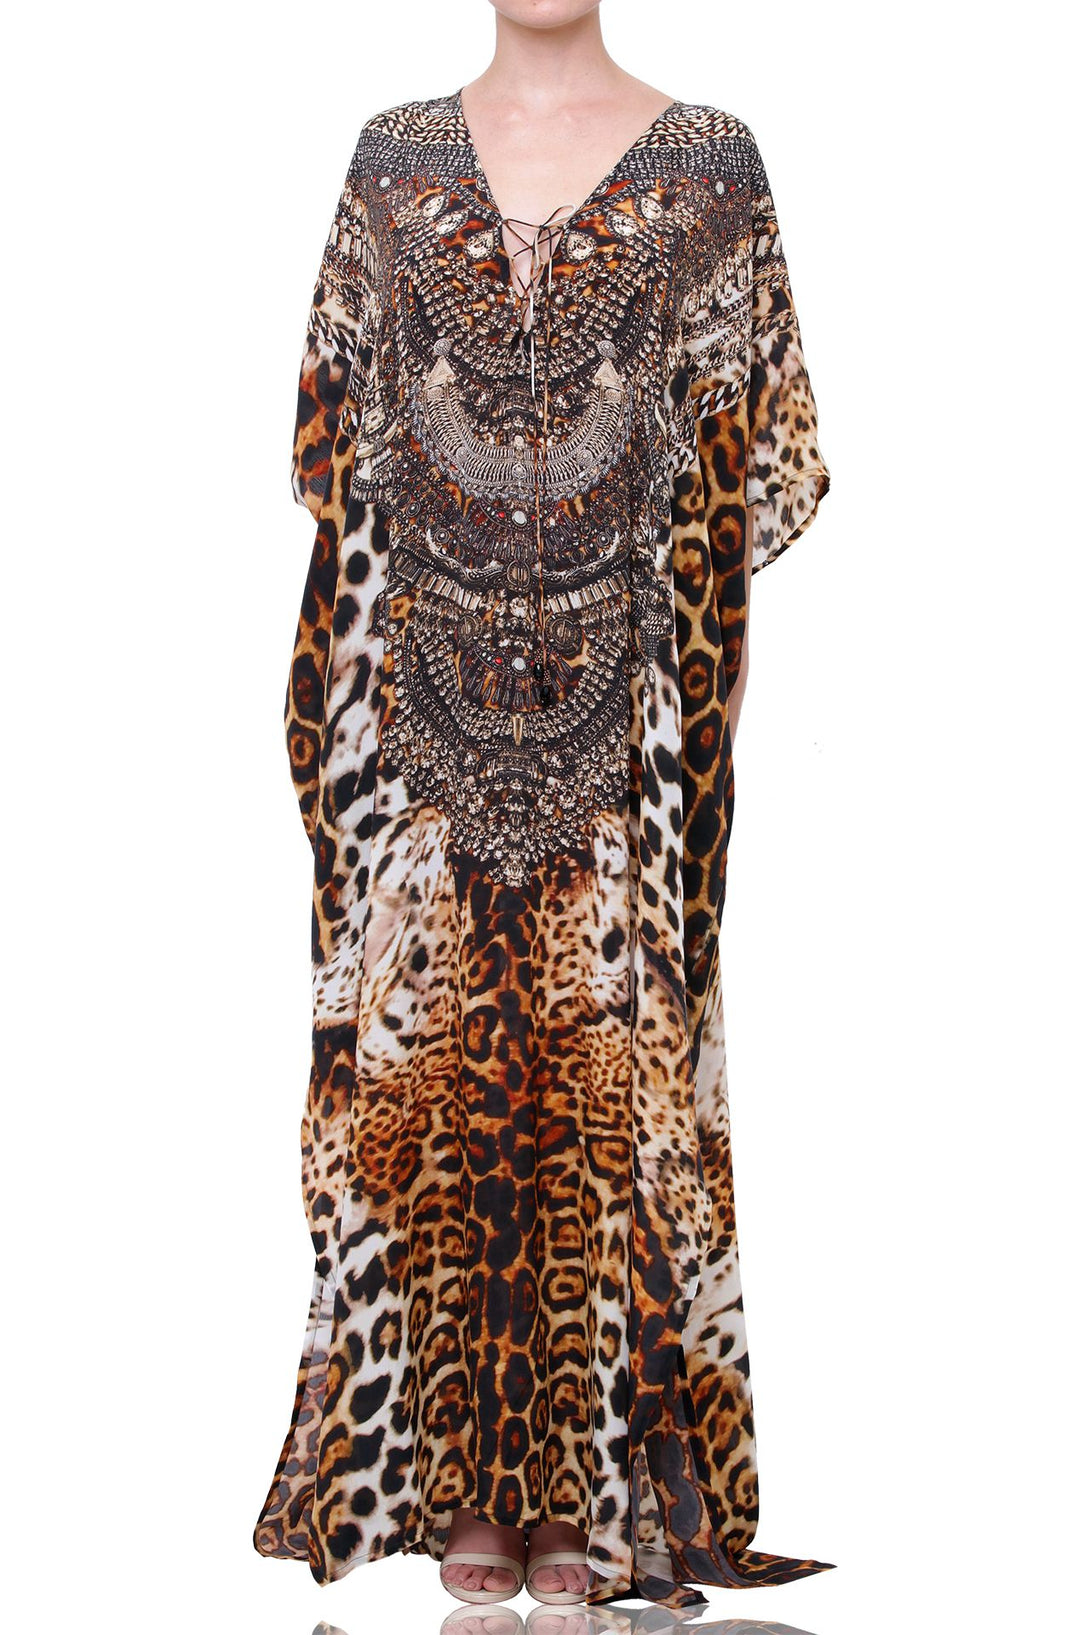 "leopard print kaftan dress" "Shahida Parides" "designer kaftan" "silk caftans"